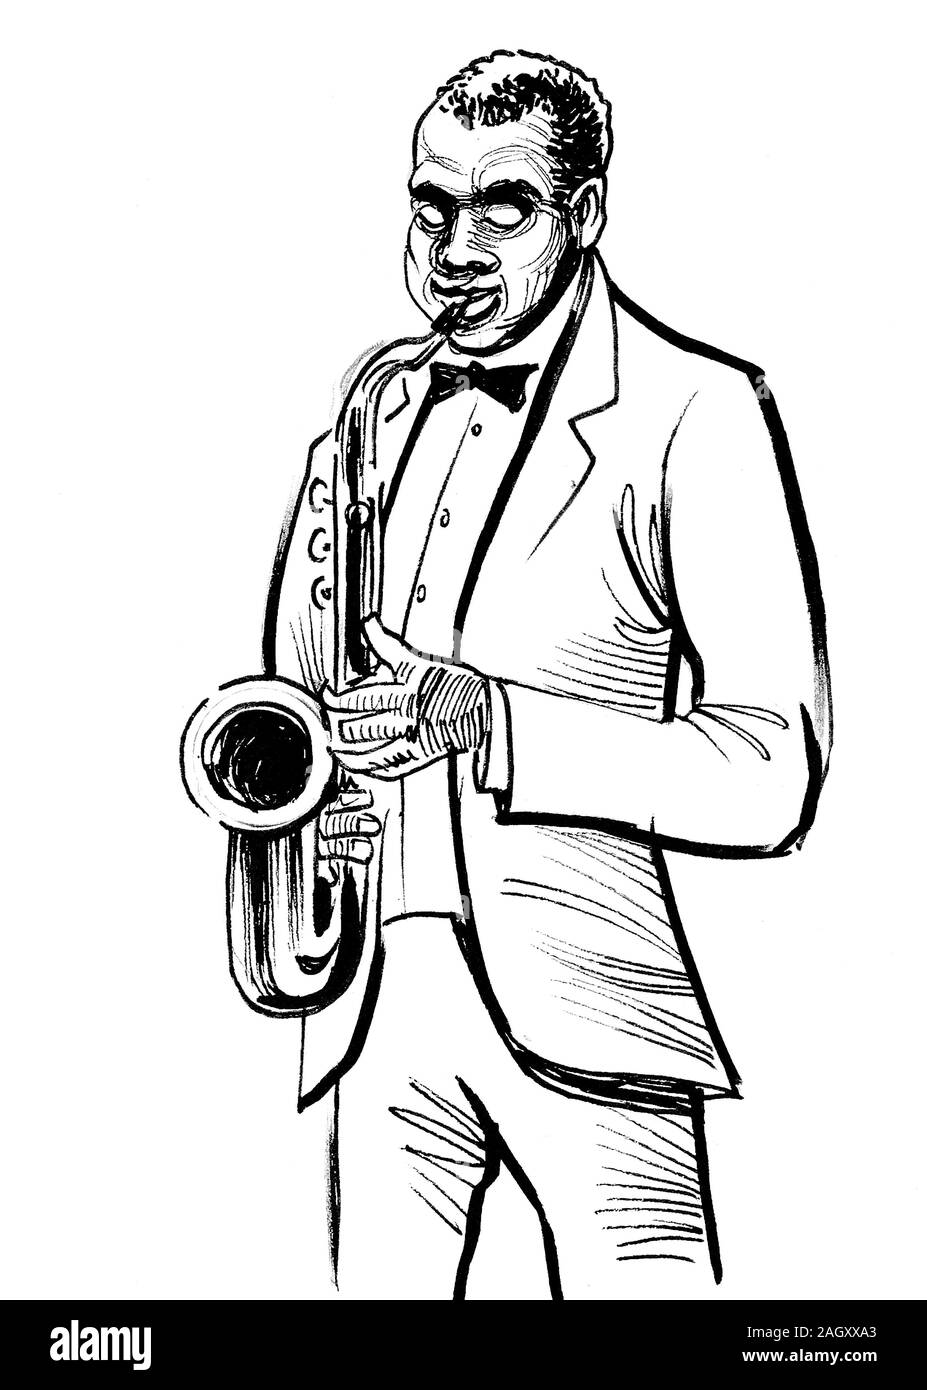 Musicien de jazz avec saxophone. Encre dessin noir et blanc Banque D'Images